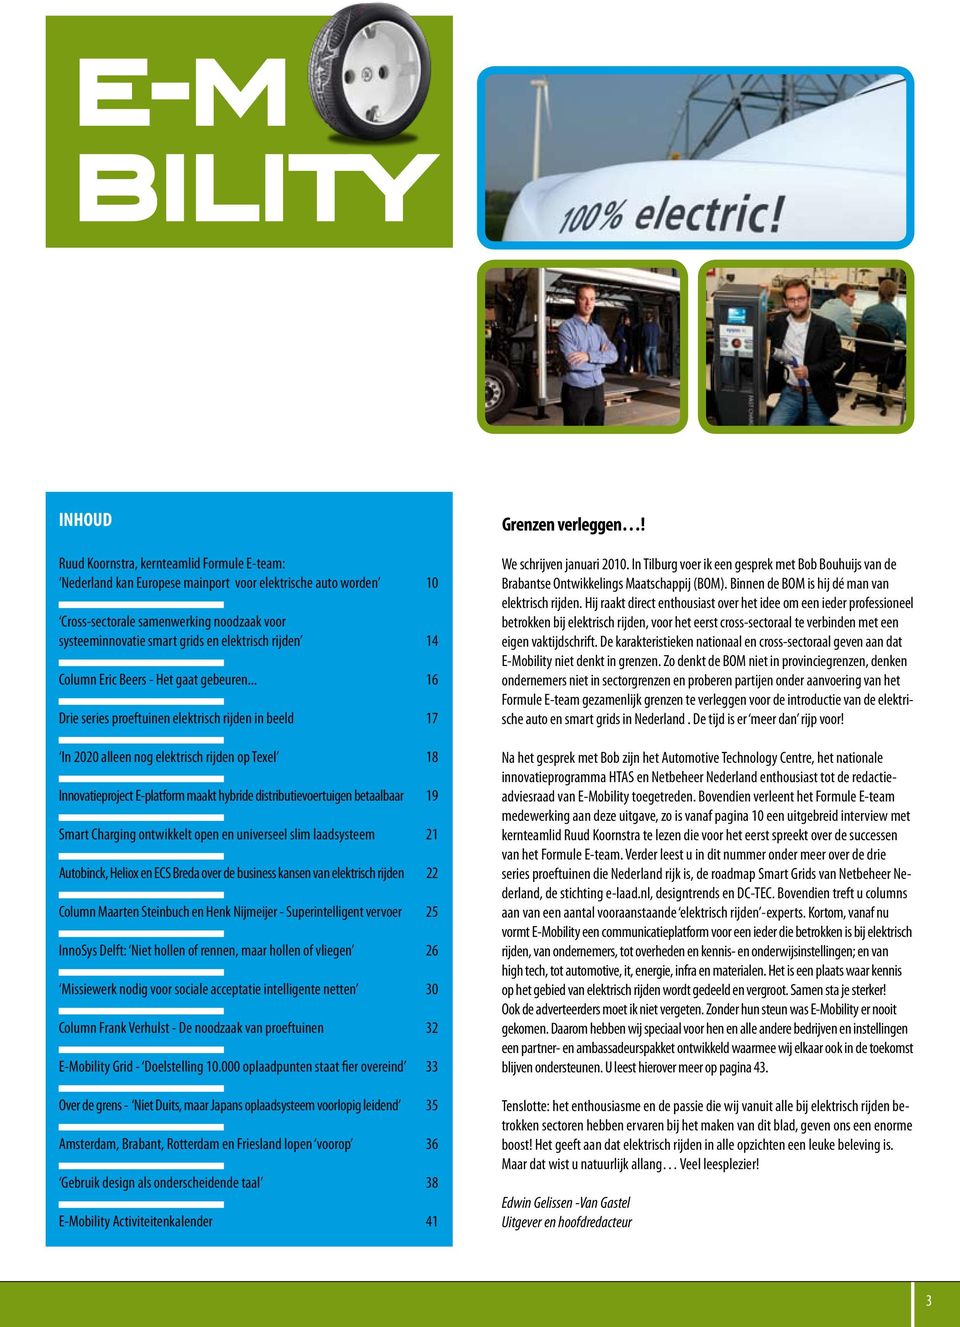 .. 16 Drie series proeftuinen elektrisch rijden in beeld 17 In 2020 alleen nog elektrisch rijden op Texel 18 Innovatieproject E-platform maakt hybride distributievoertuigen betaalbaar 19 Smart